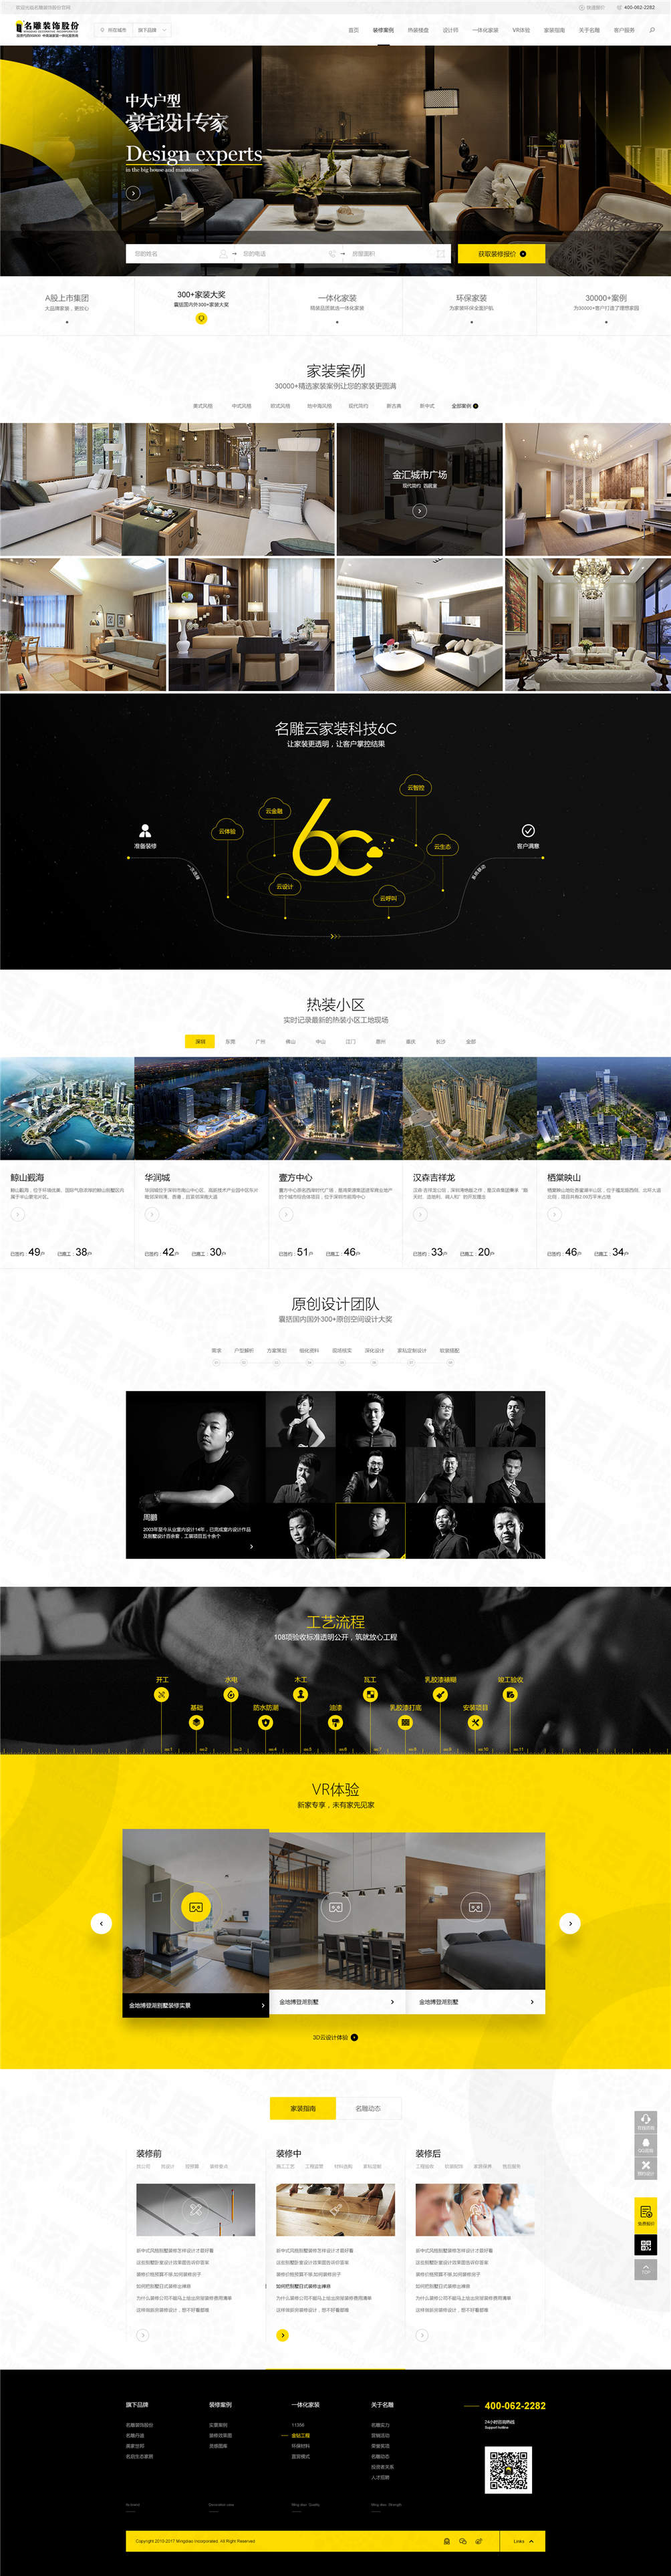 深圳名雕裝飾品牌網站建設案例